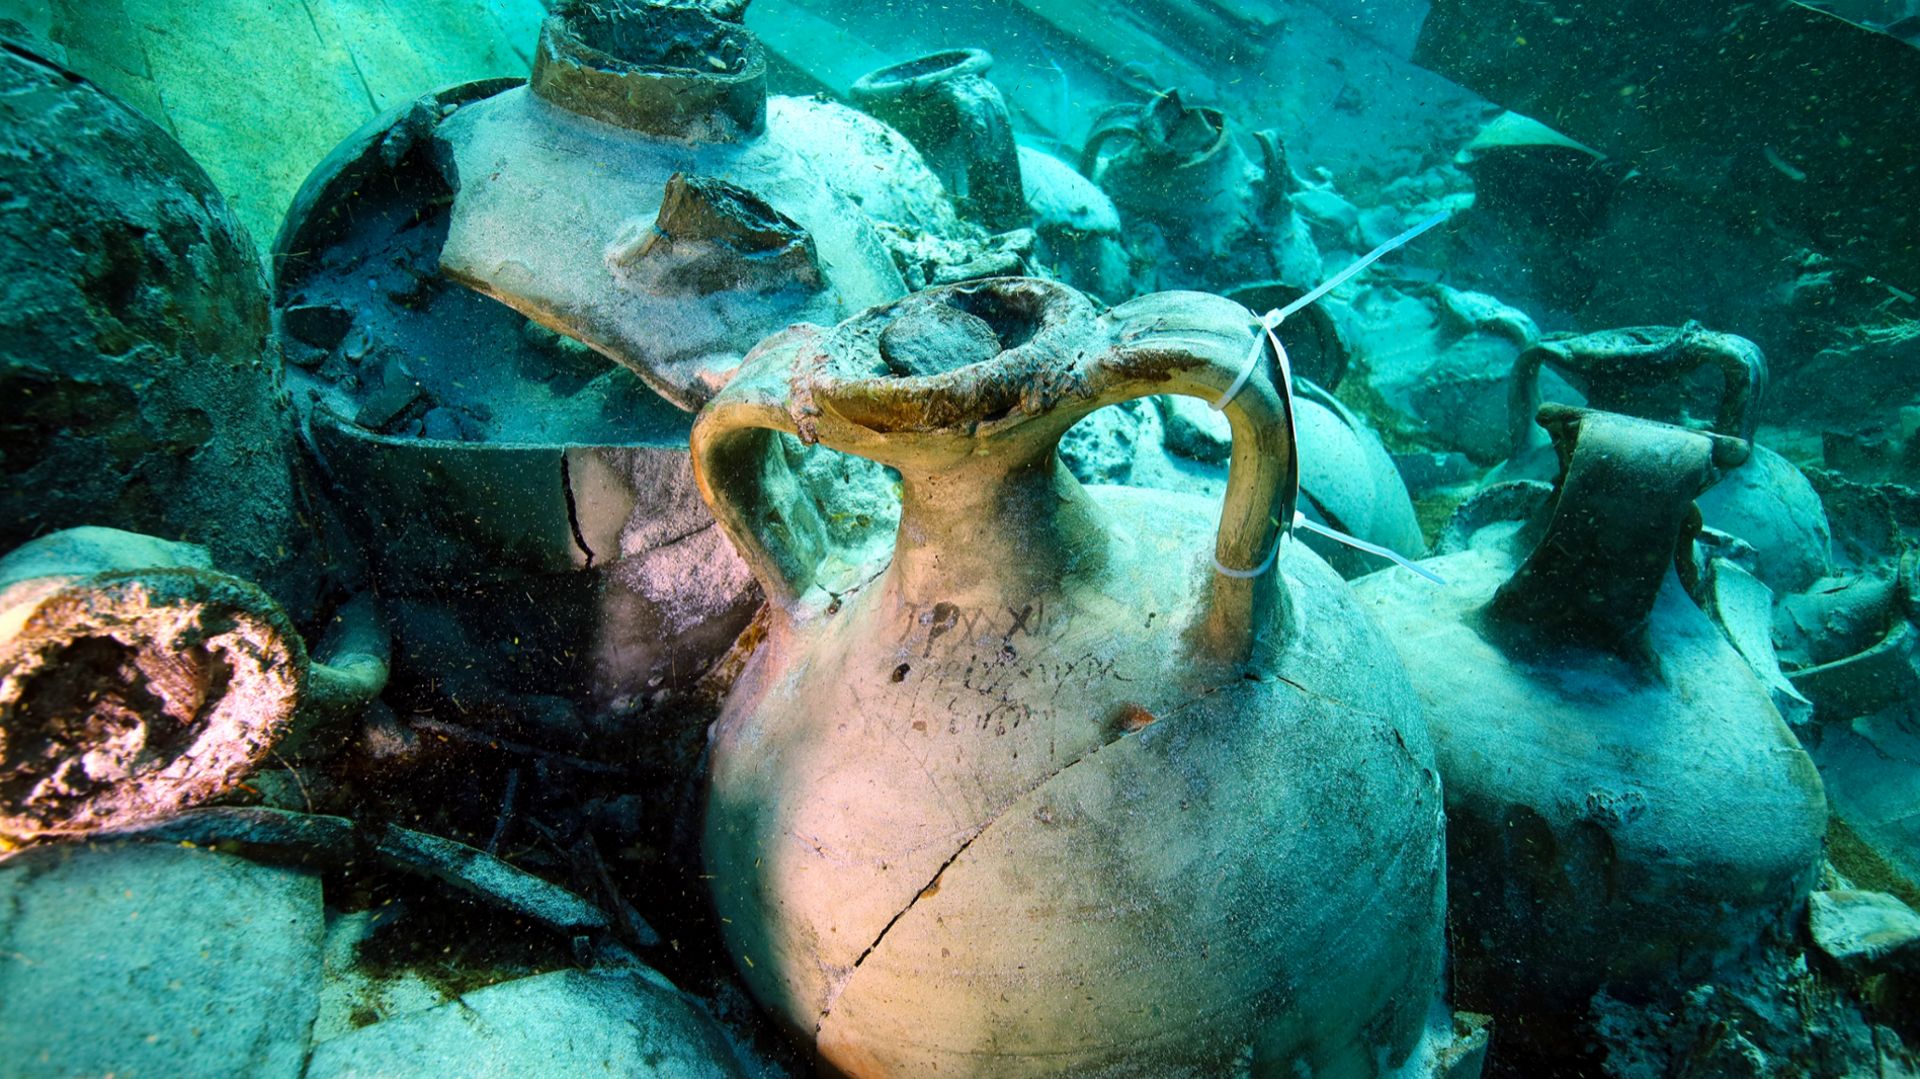 Les amphores très bien conservées dans la cargaison du navire romain découvert près de la plage de Palma de Majorque.